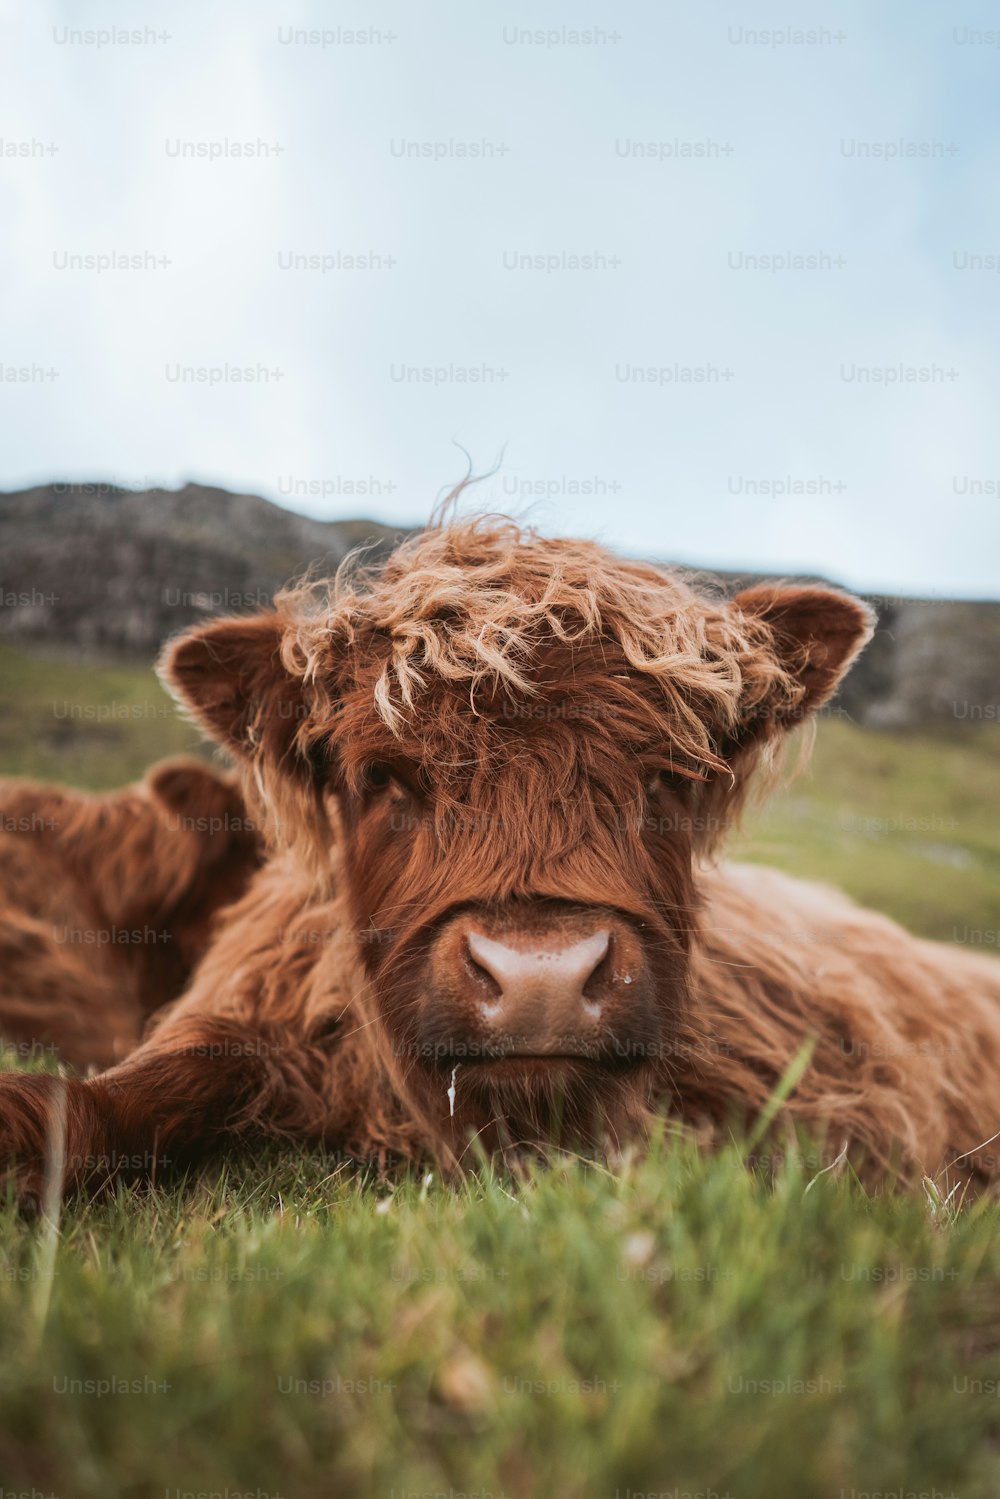 Una vaca tirada en la hierba